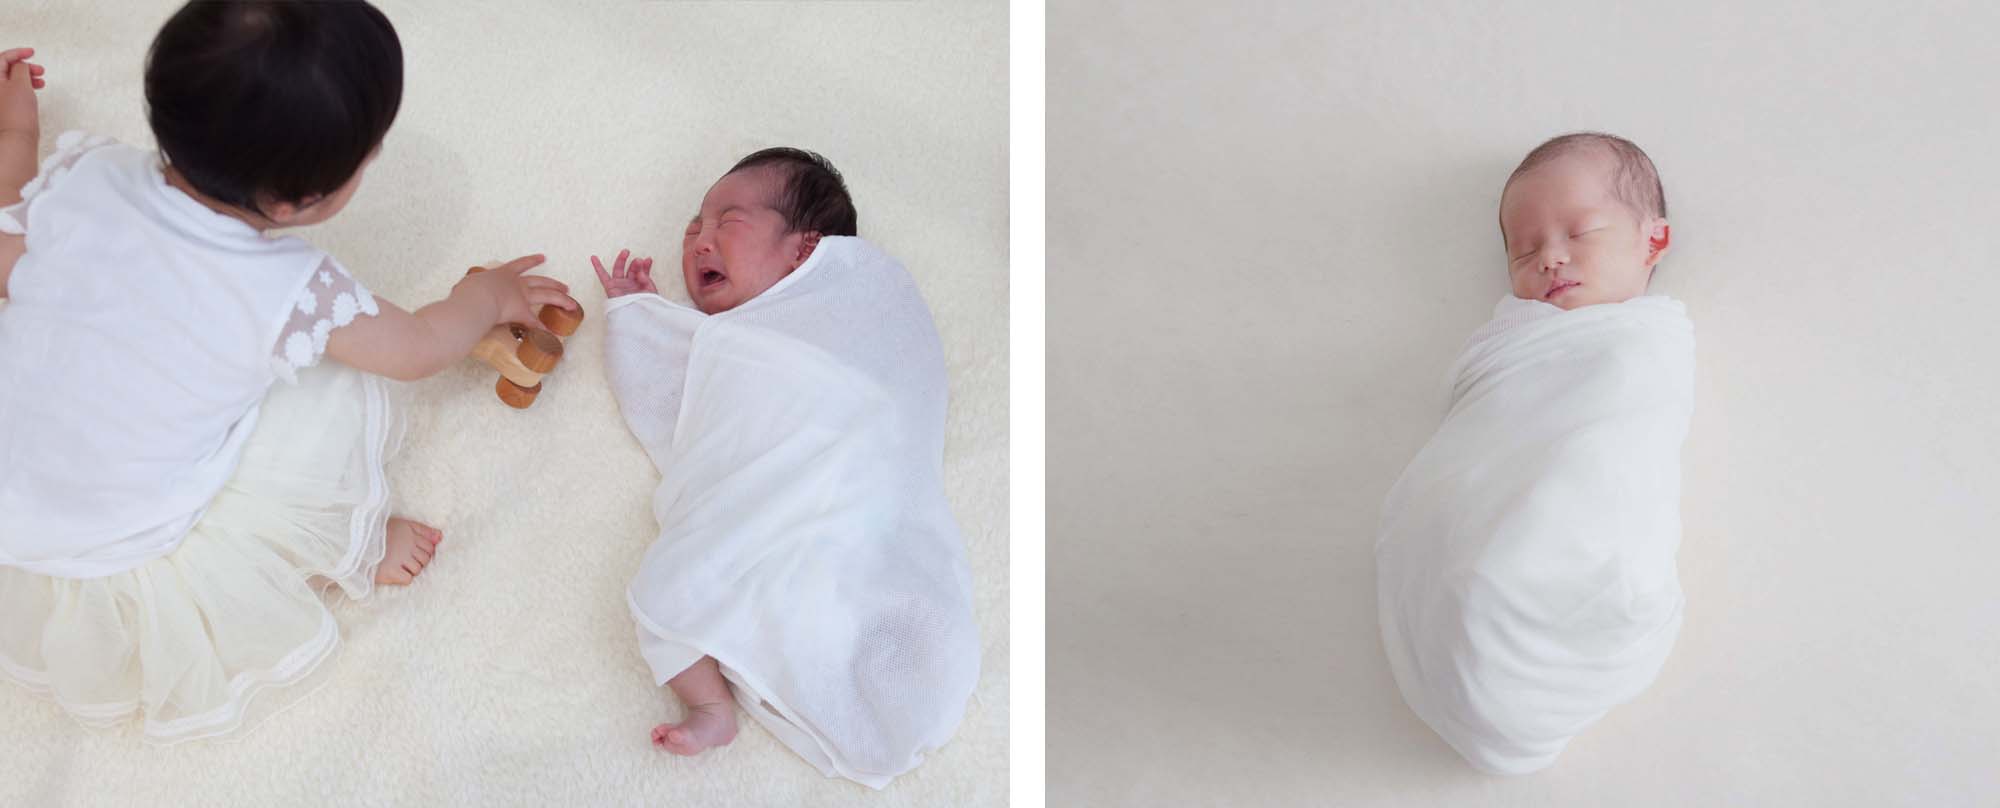 左：1ヶ月近くなると、なかなかおひな巻かれてくれません。　右：生後2週間の赤ちゃん。おひな巻きで寝てくれます。